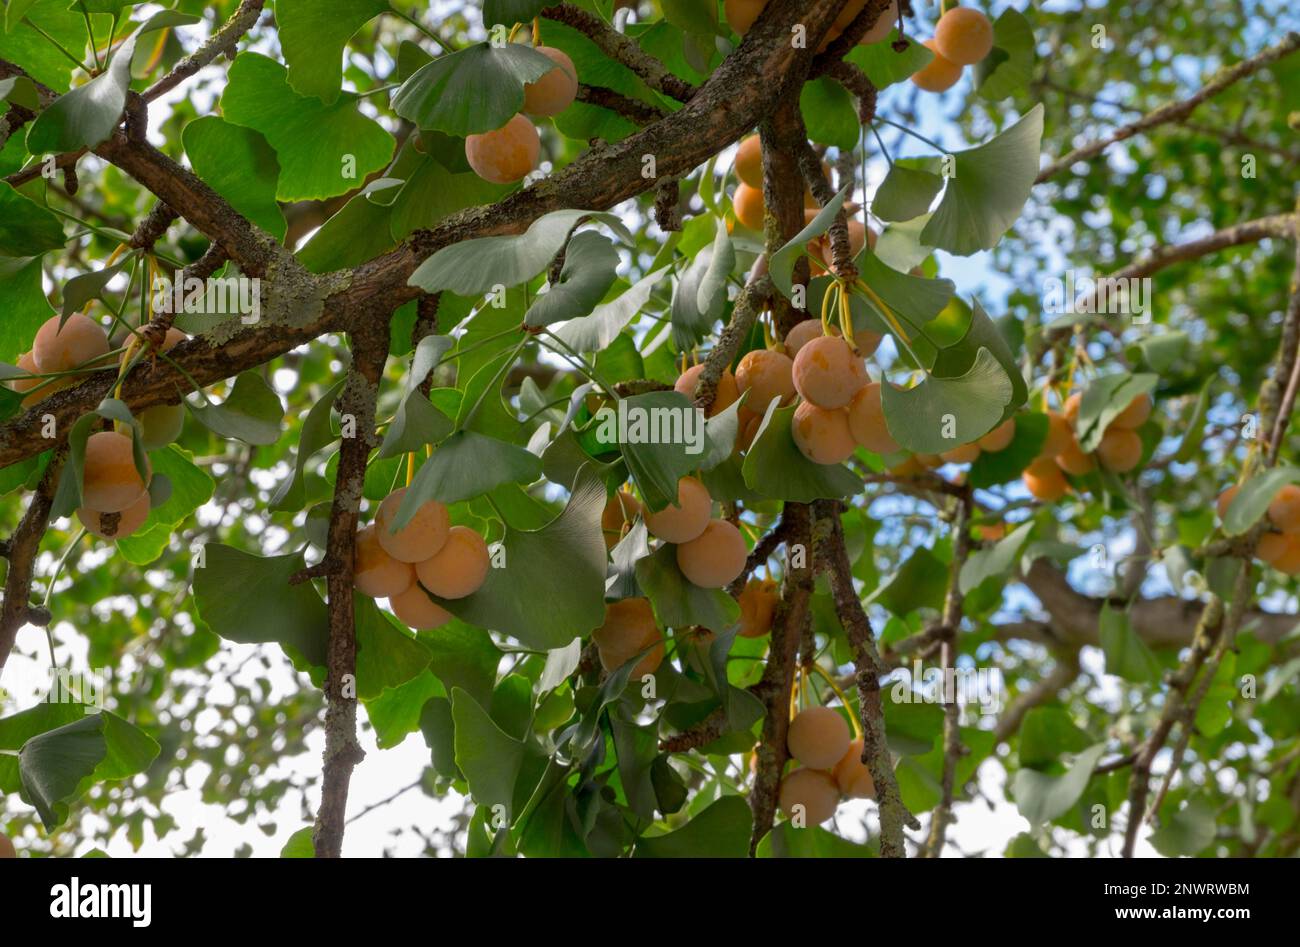 Fruits of ginkgo (Ginkgo biloba) Stock Photo